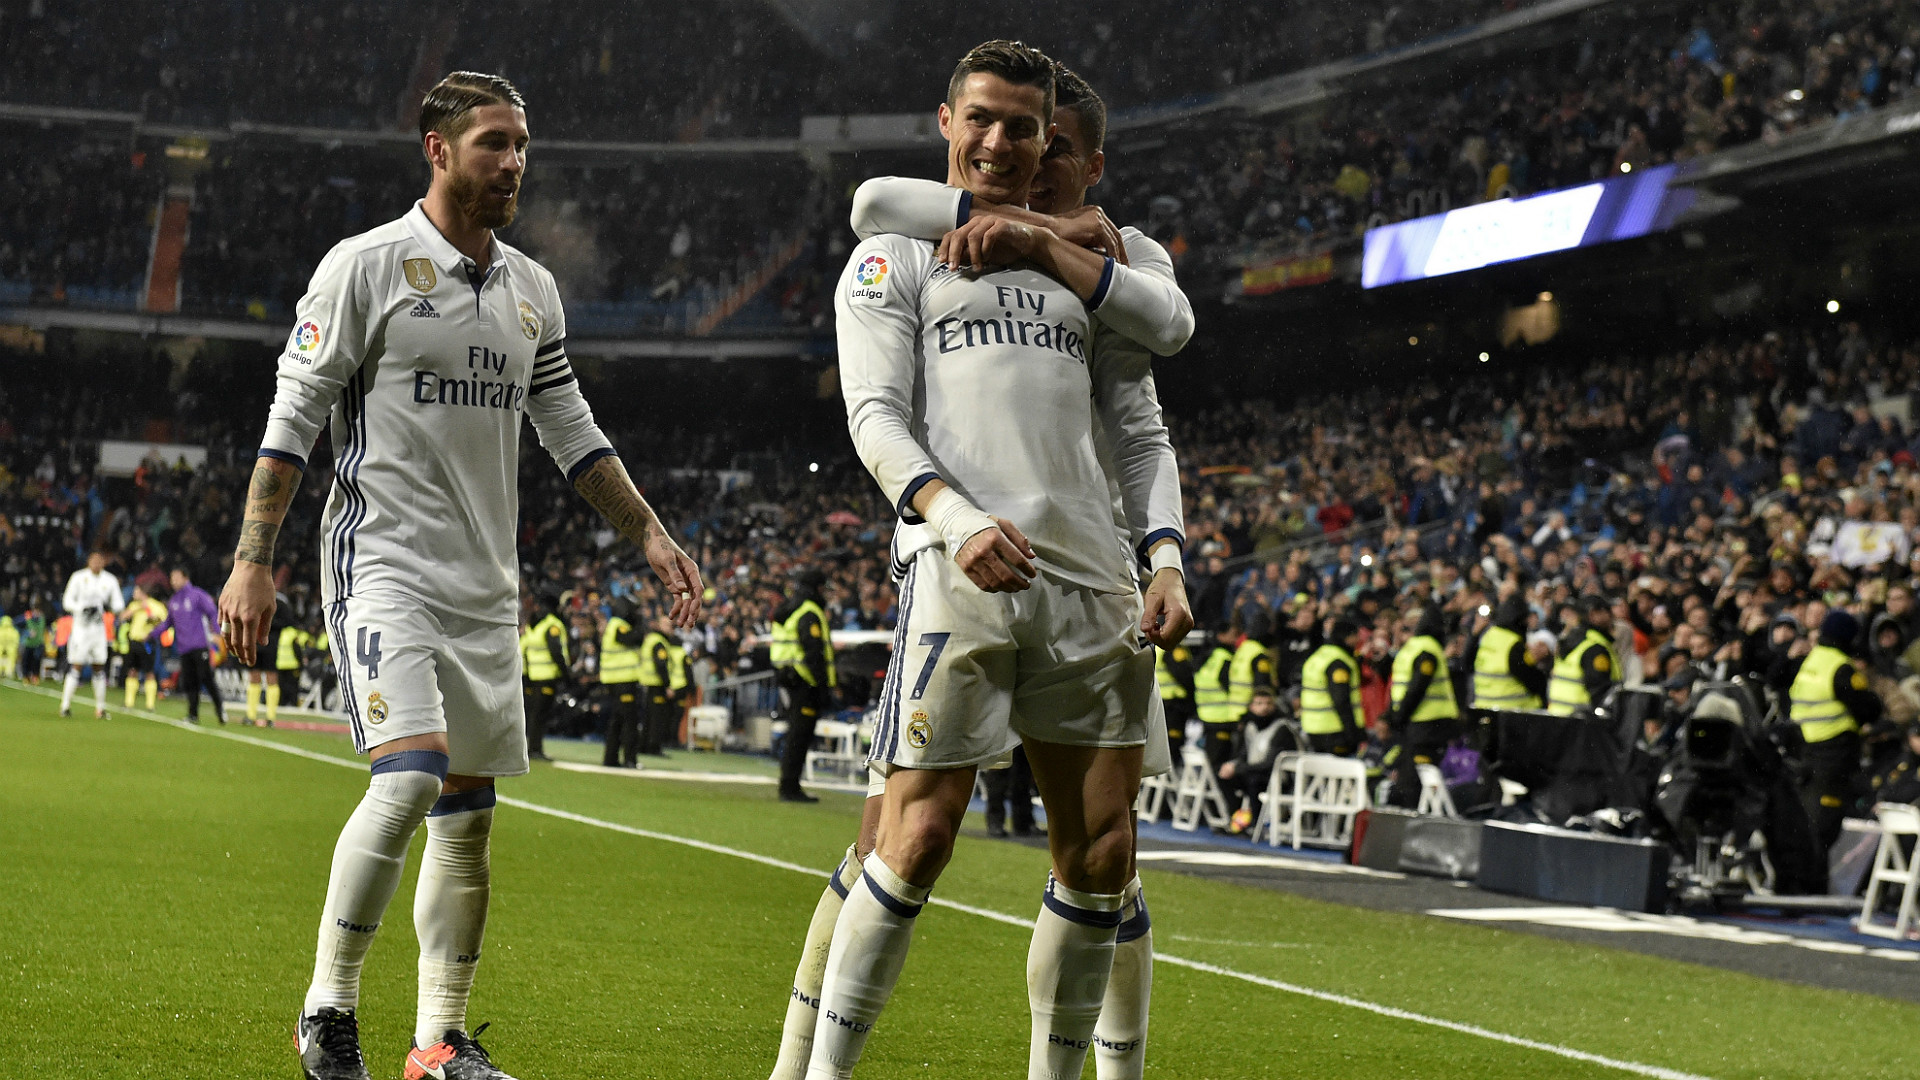 Piala Super Eropa: Real Madrid Lebih Diunggulkan ketimbang MU